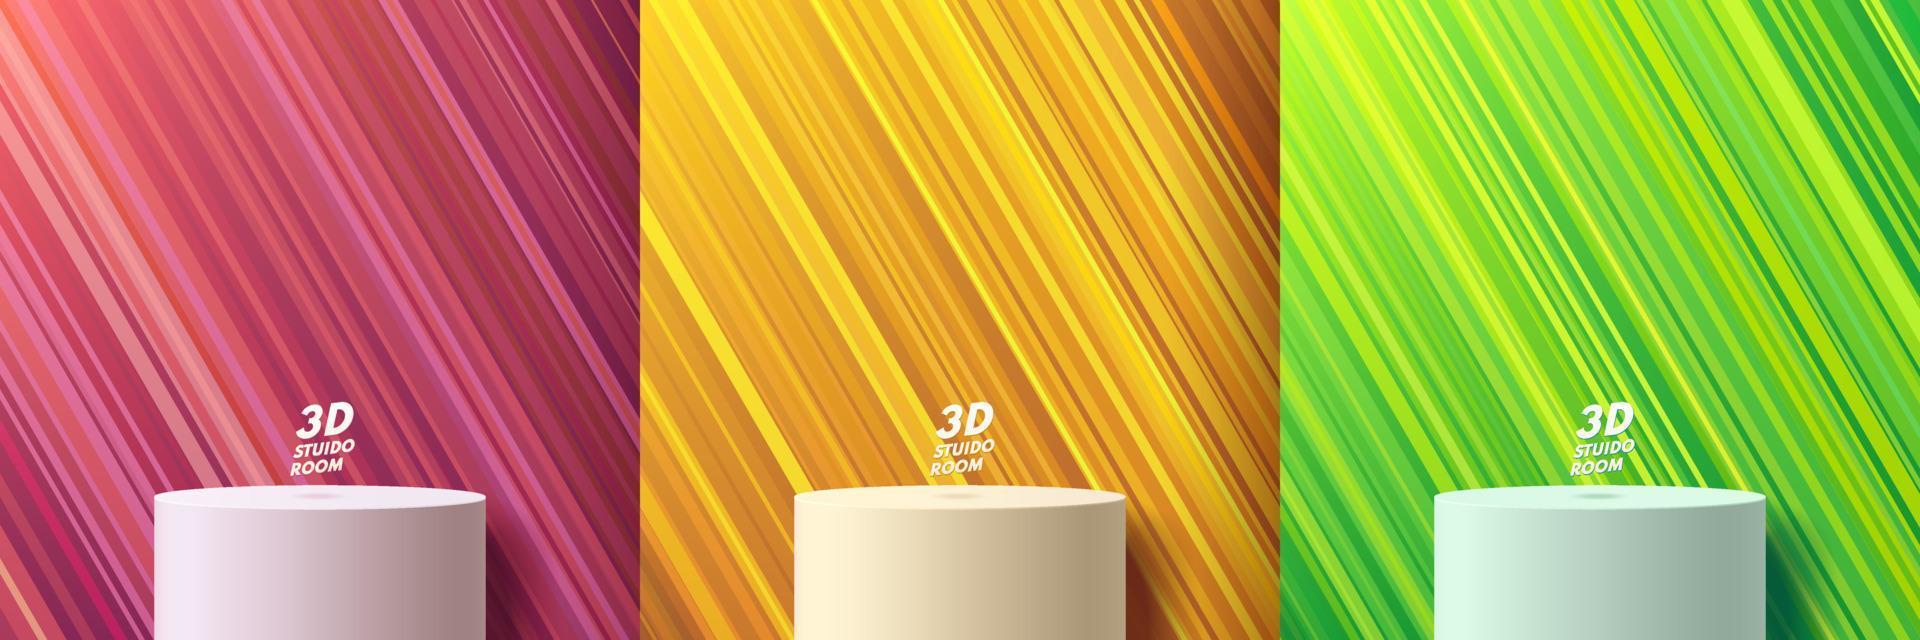 set van witte realistische 3d cilinder staan podium met diagonale streeplijn in gele, groene en roze kleur. vector abstracte geometrische vormen. minimale scène voor mockup-productshowcase, promotieweergave